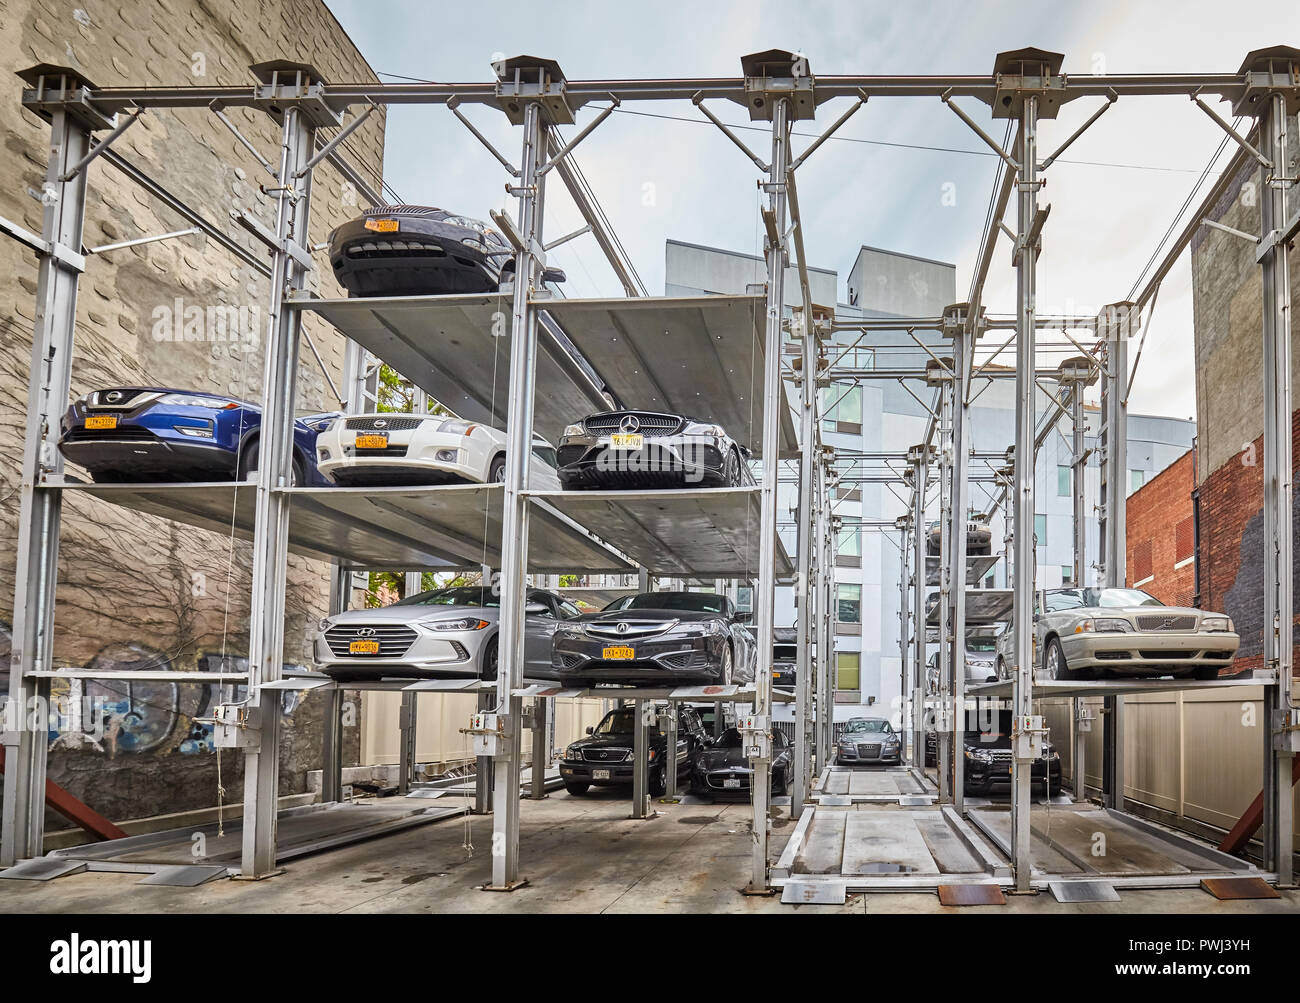 New York City, USA - Juli 06, 2018: Erhöhte Parking System in Williamsburg Nachbarschaft, entwickelt der Bereich für parkende Autos auf ein Minimum zu reduzieren. Stockfoto